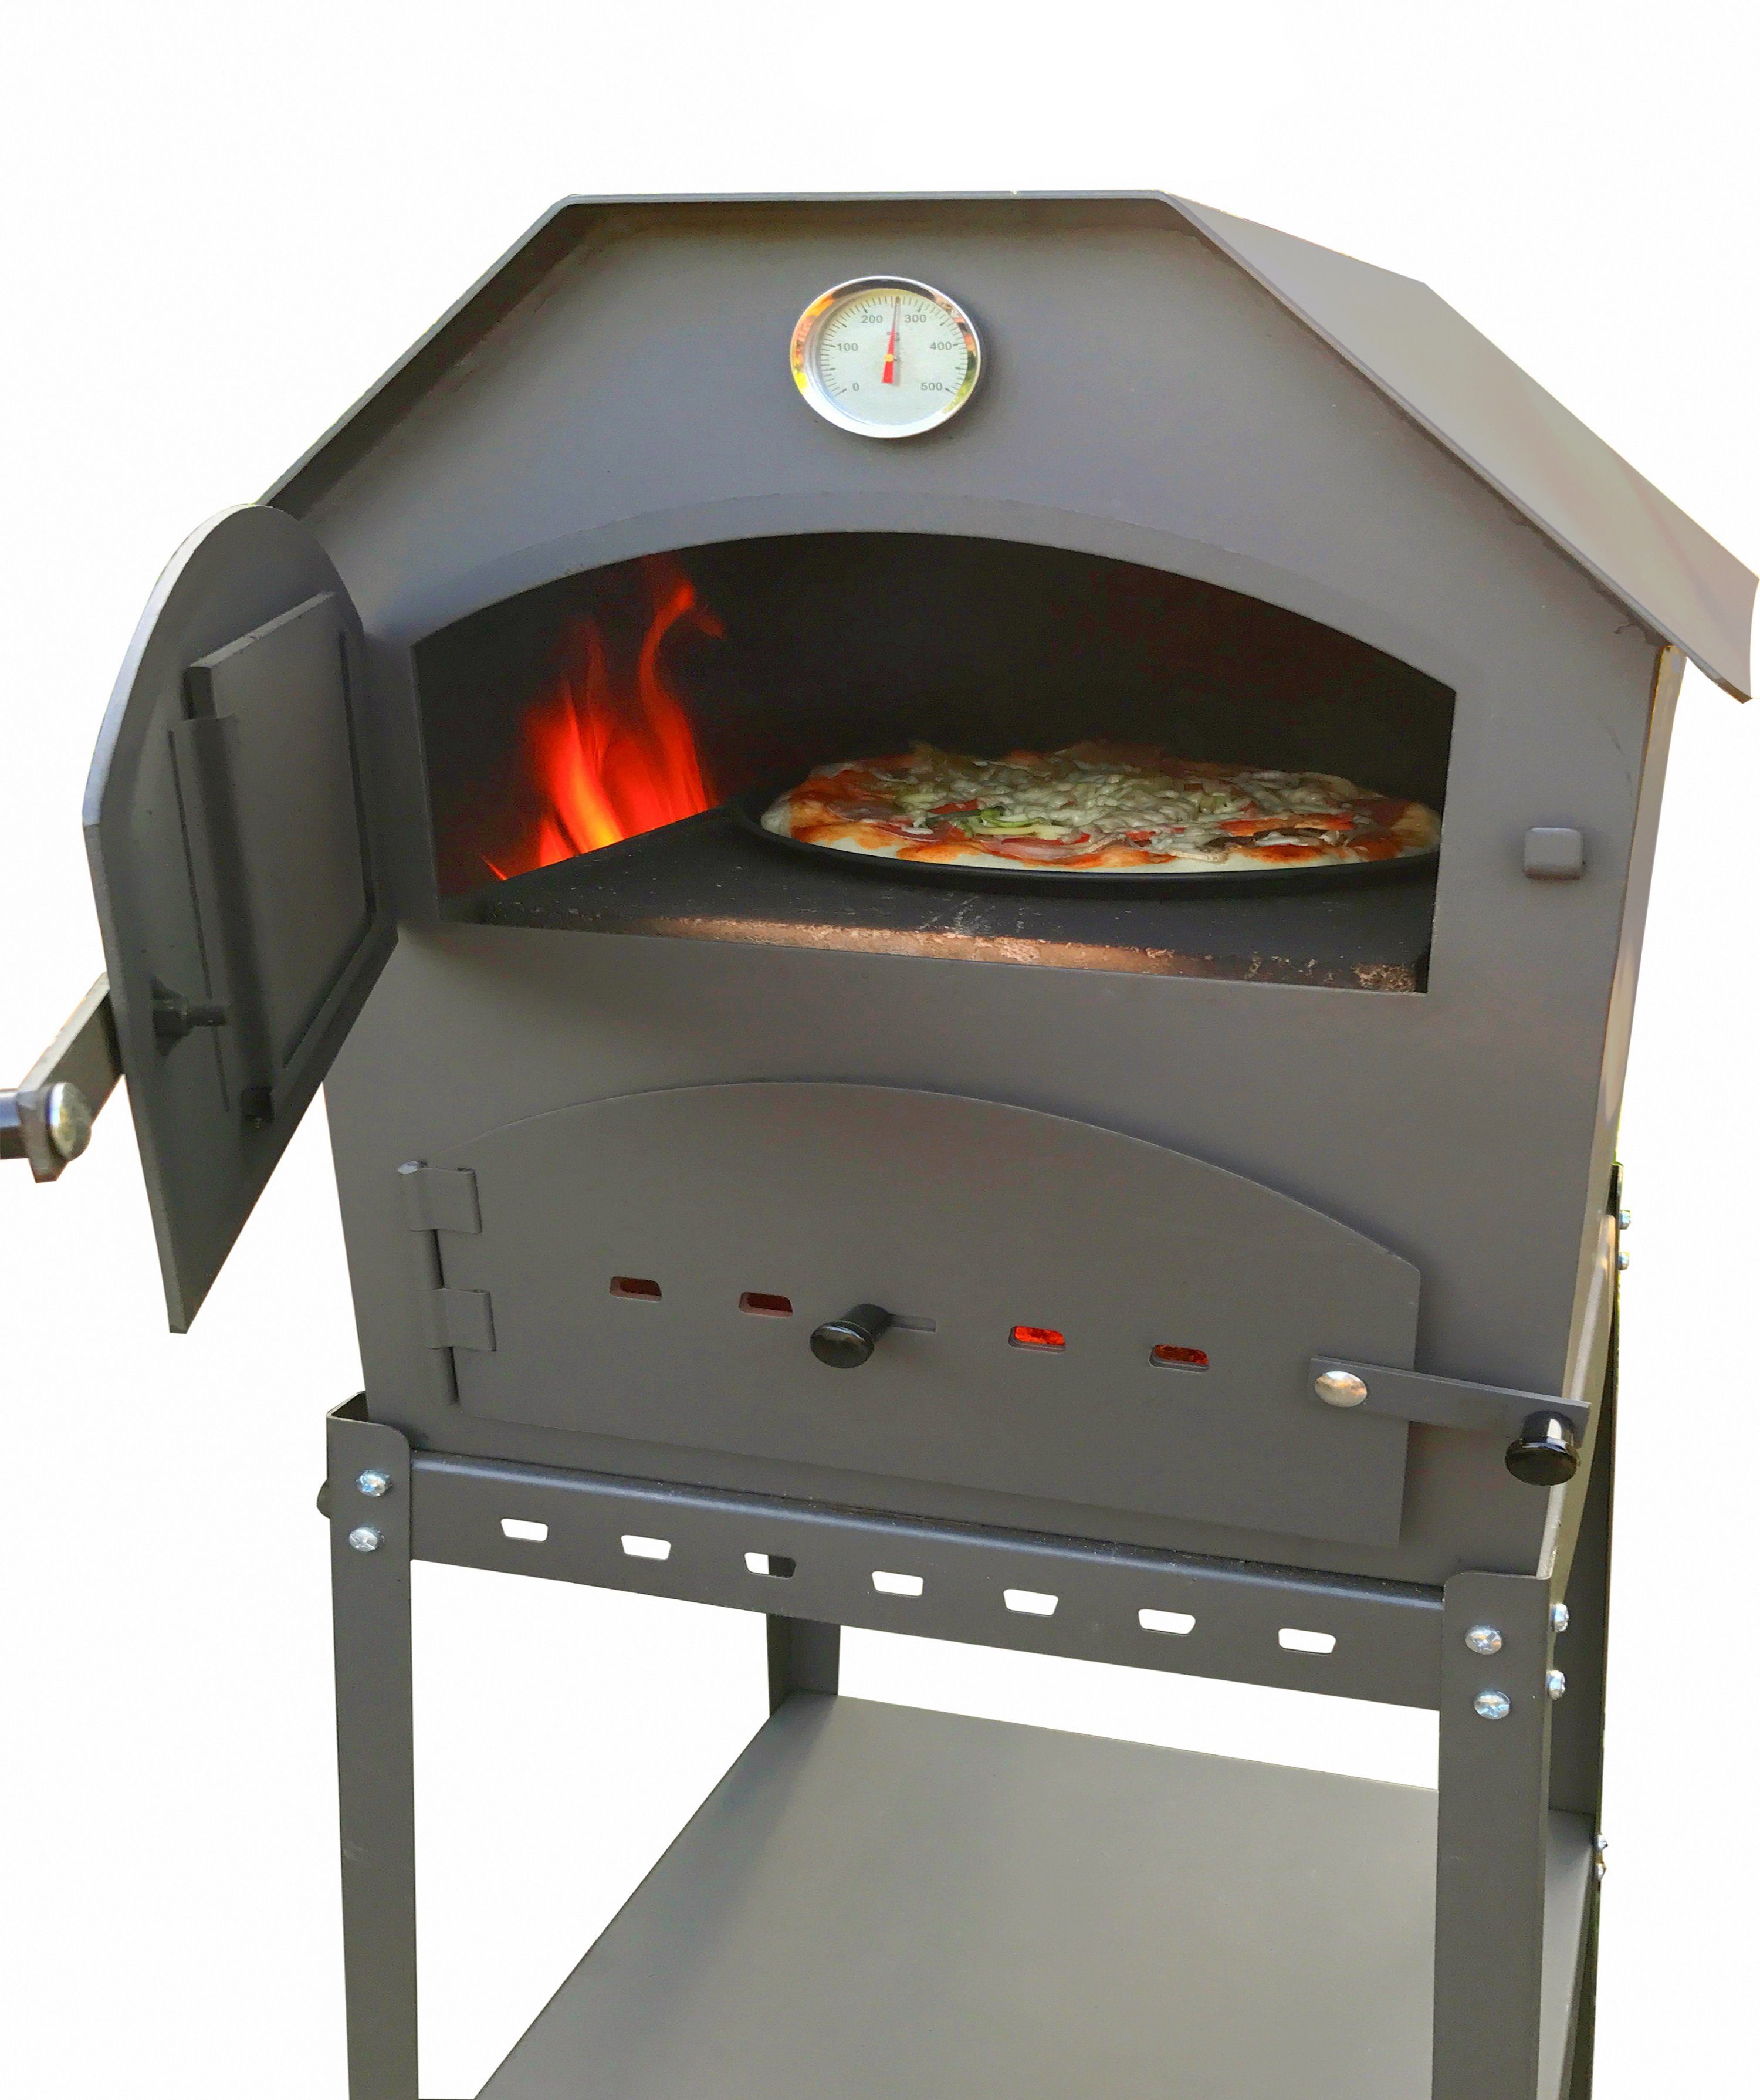 acerto® Pizzaofen acerto® Profi Pizzaofen für den Garten - 64x63x68 cm mit Gestell, Für Brot, Pizza, Flammkuchen und mehr geeignet